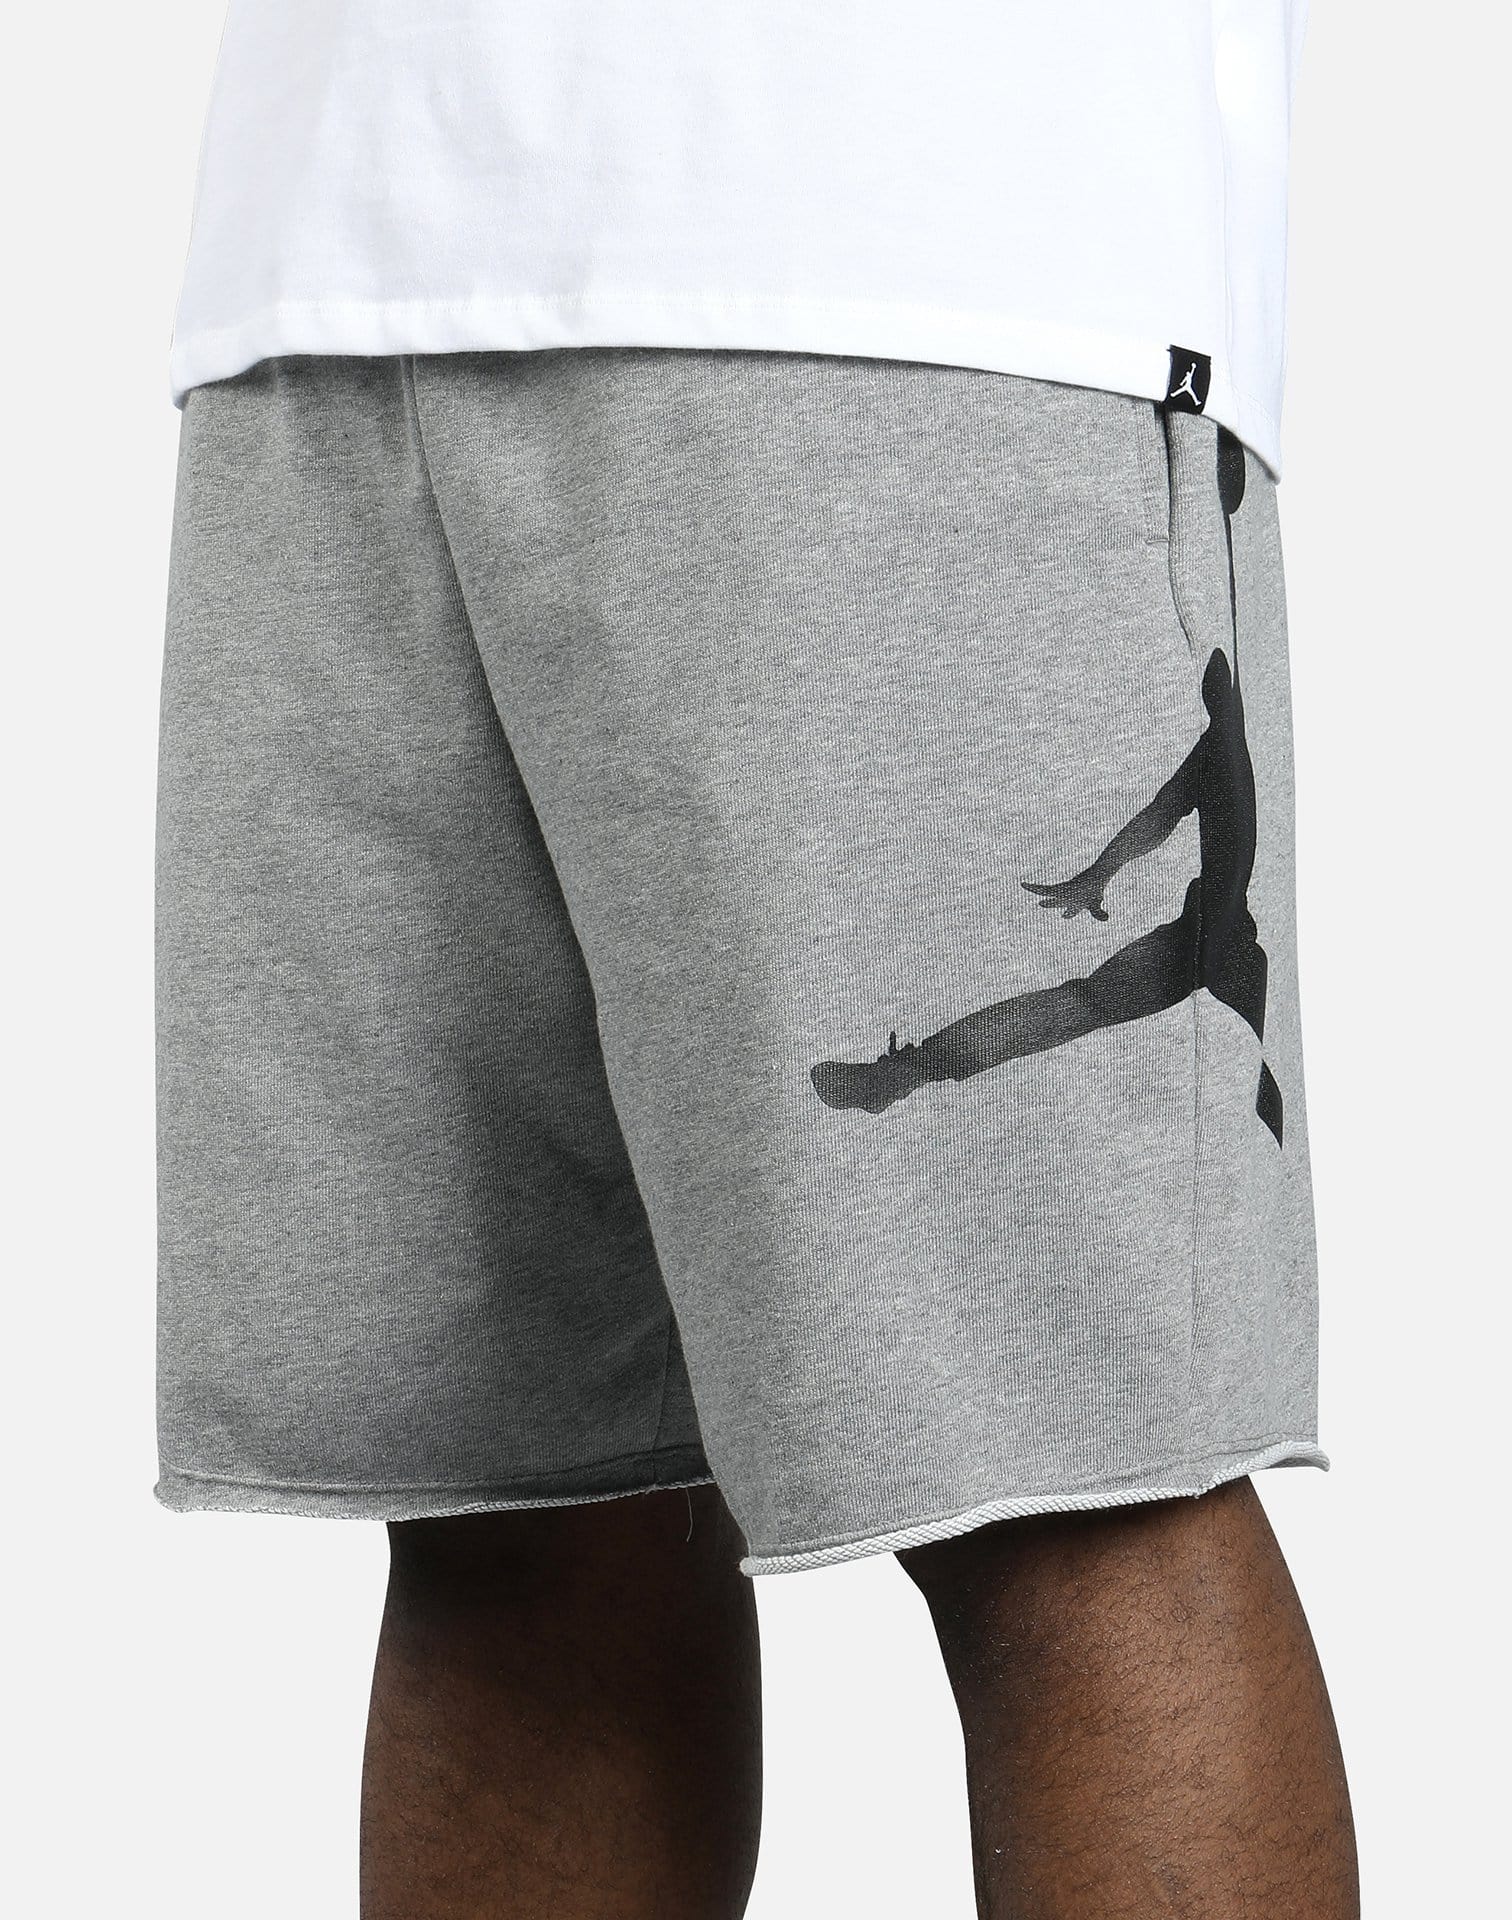 Jordan Men's Jumpman Air Fleece Shorts